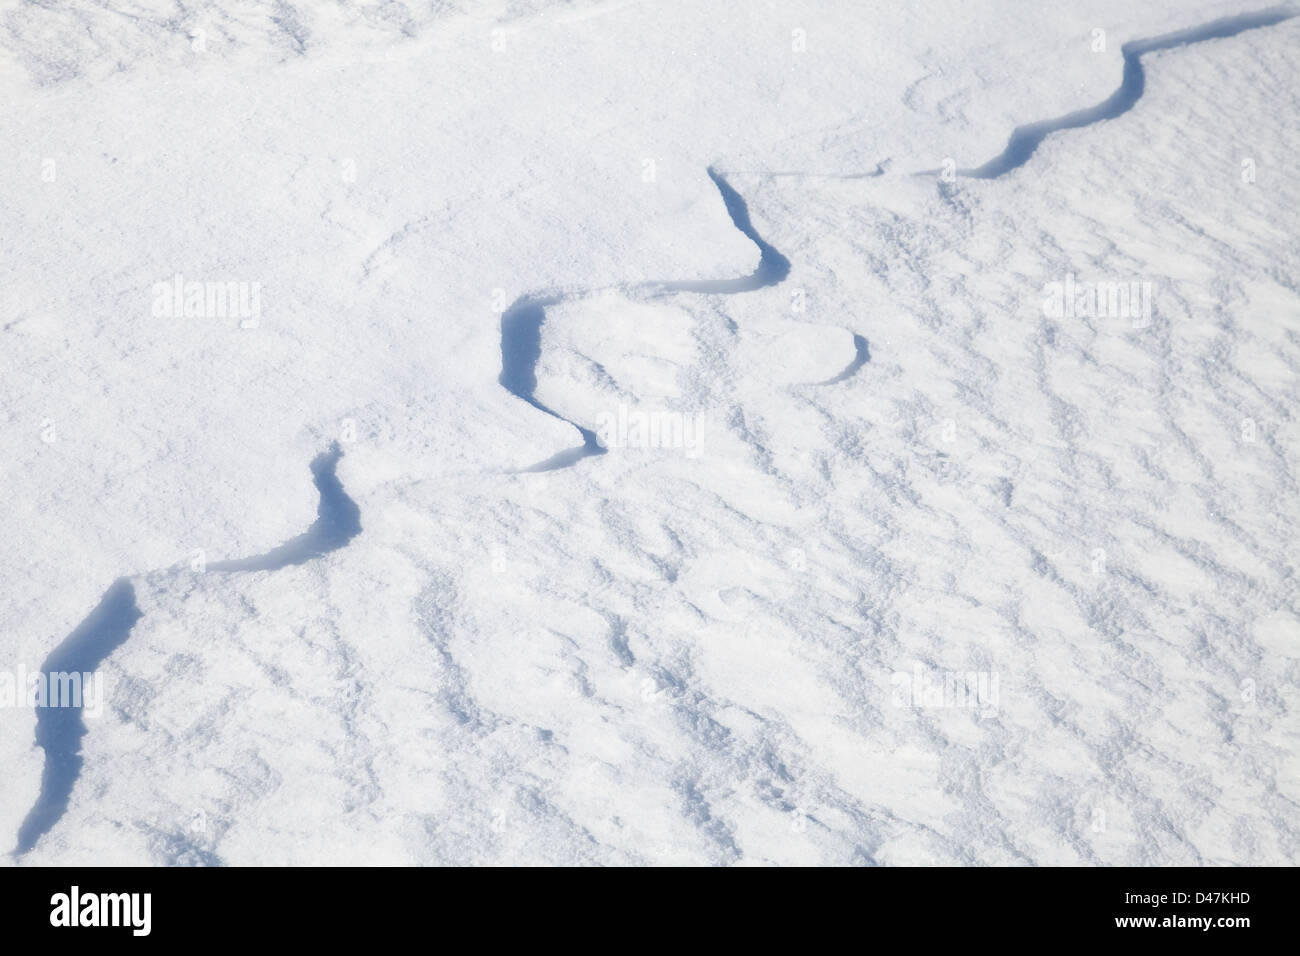 La texture de neige avec de belles ombres courbées Banque D'Images